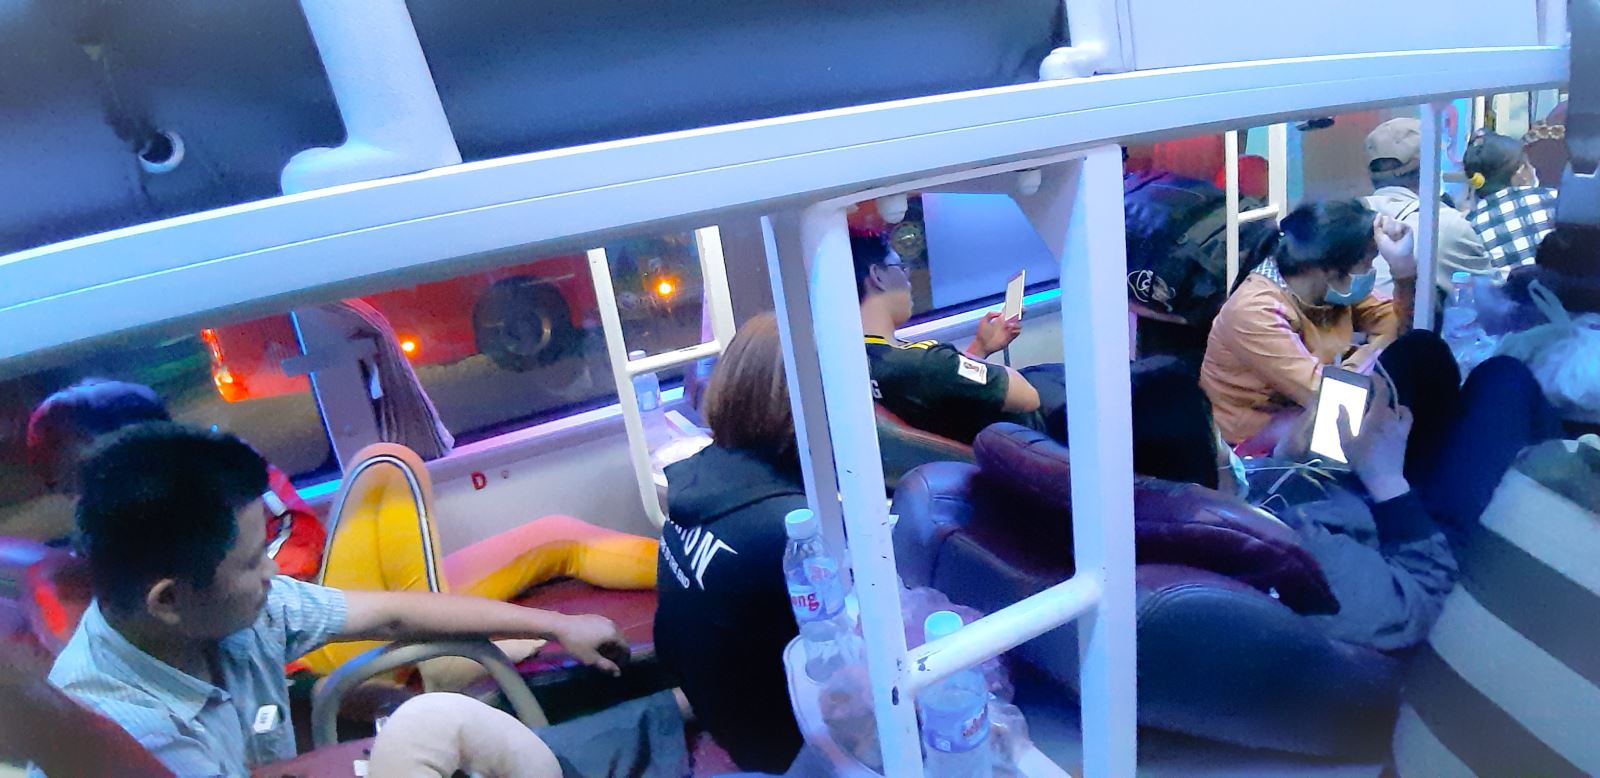 Xe giường nằm nhồi nhét chật kín hành khách | baotintuc.vn